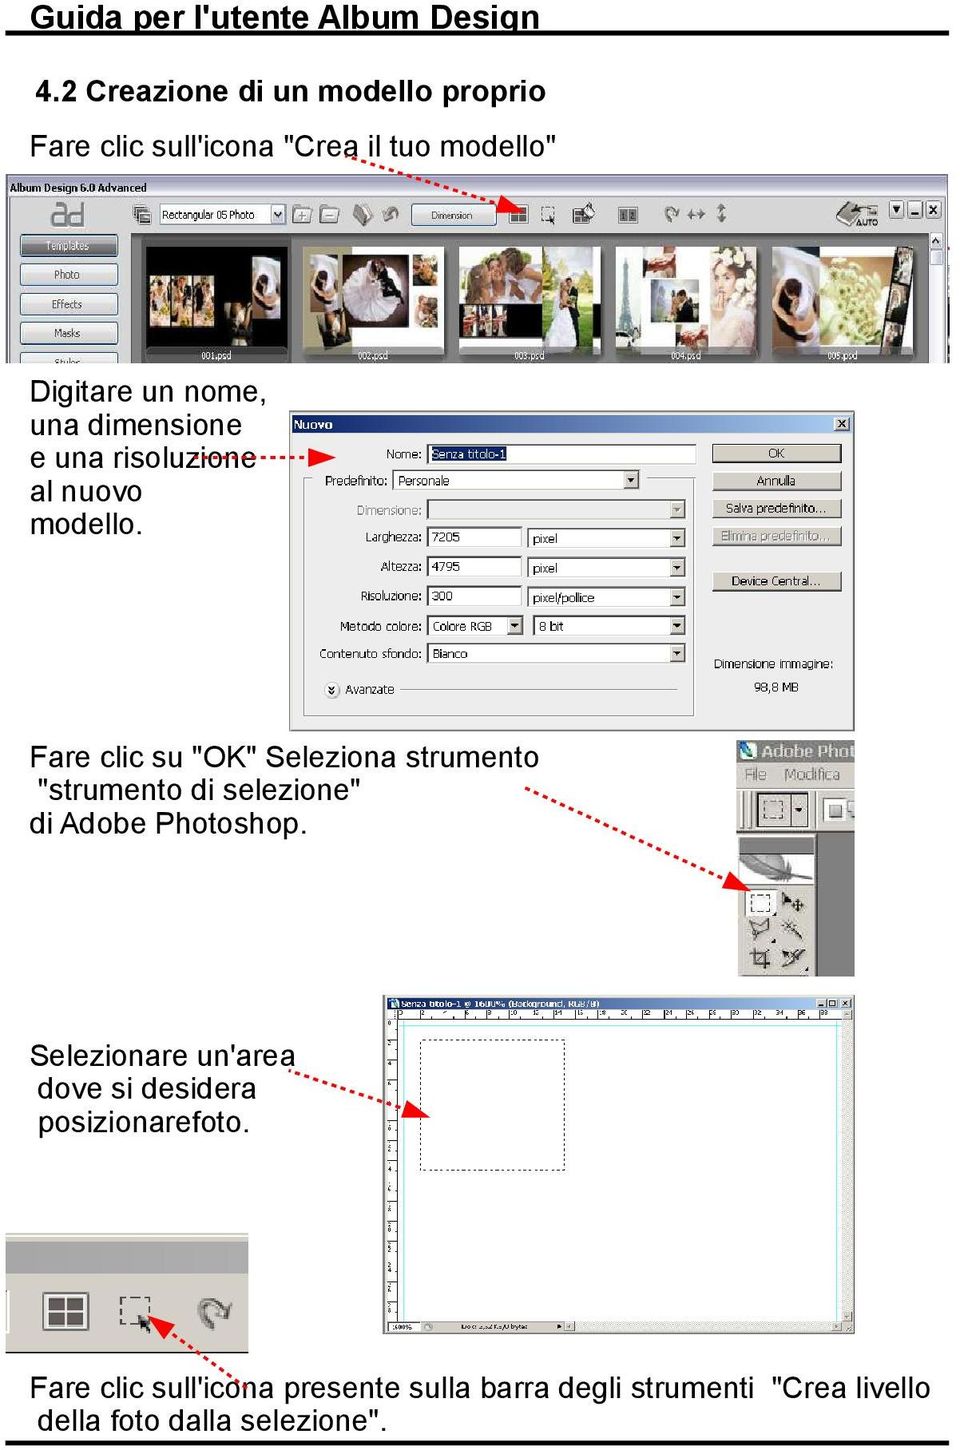 Fare clic su "OK" Seleziona strumento "strumento di selezione" di Adobe Photoshop.